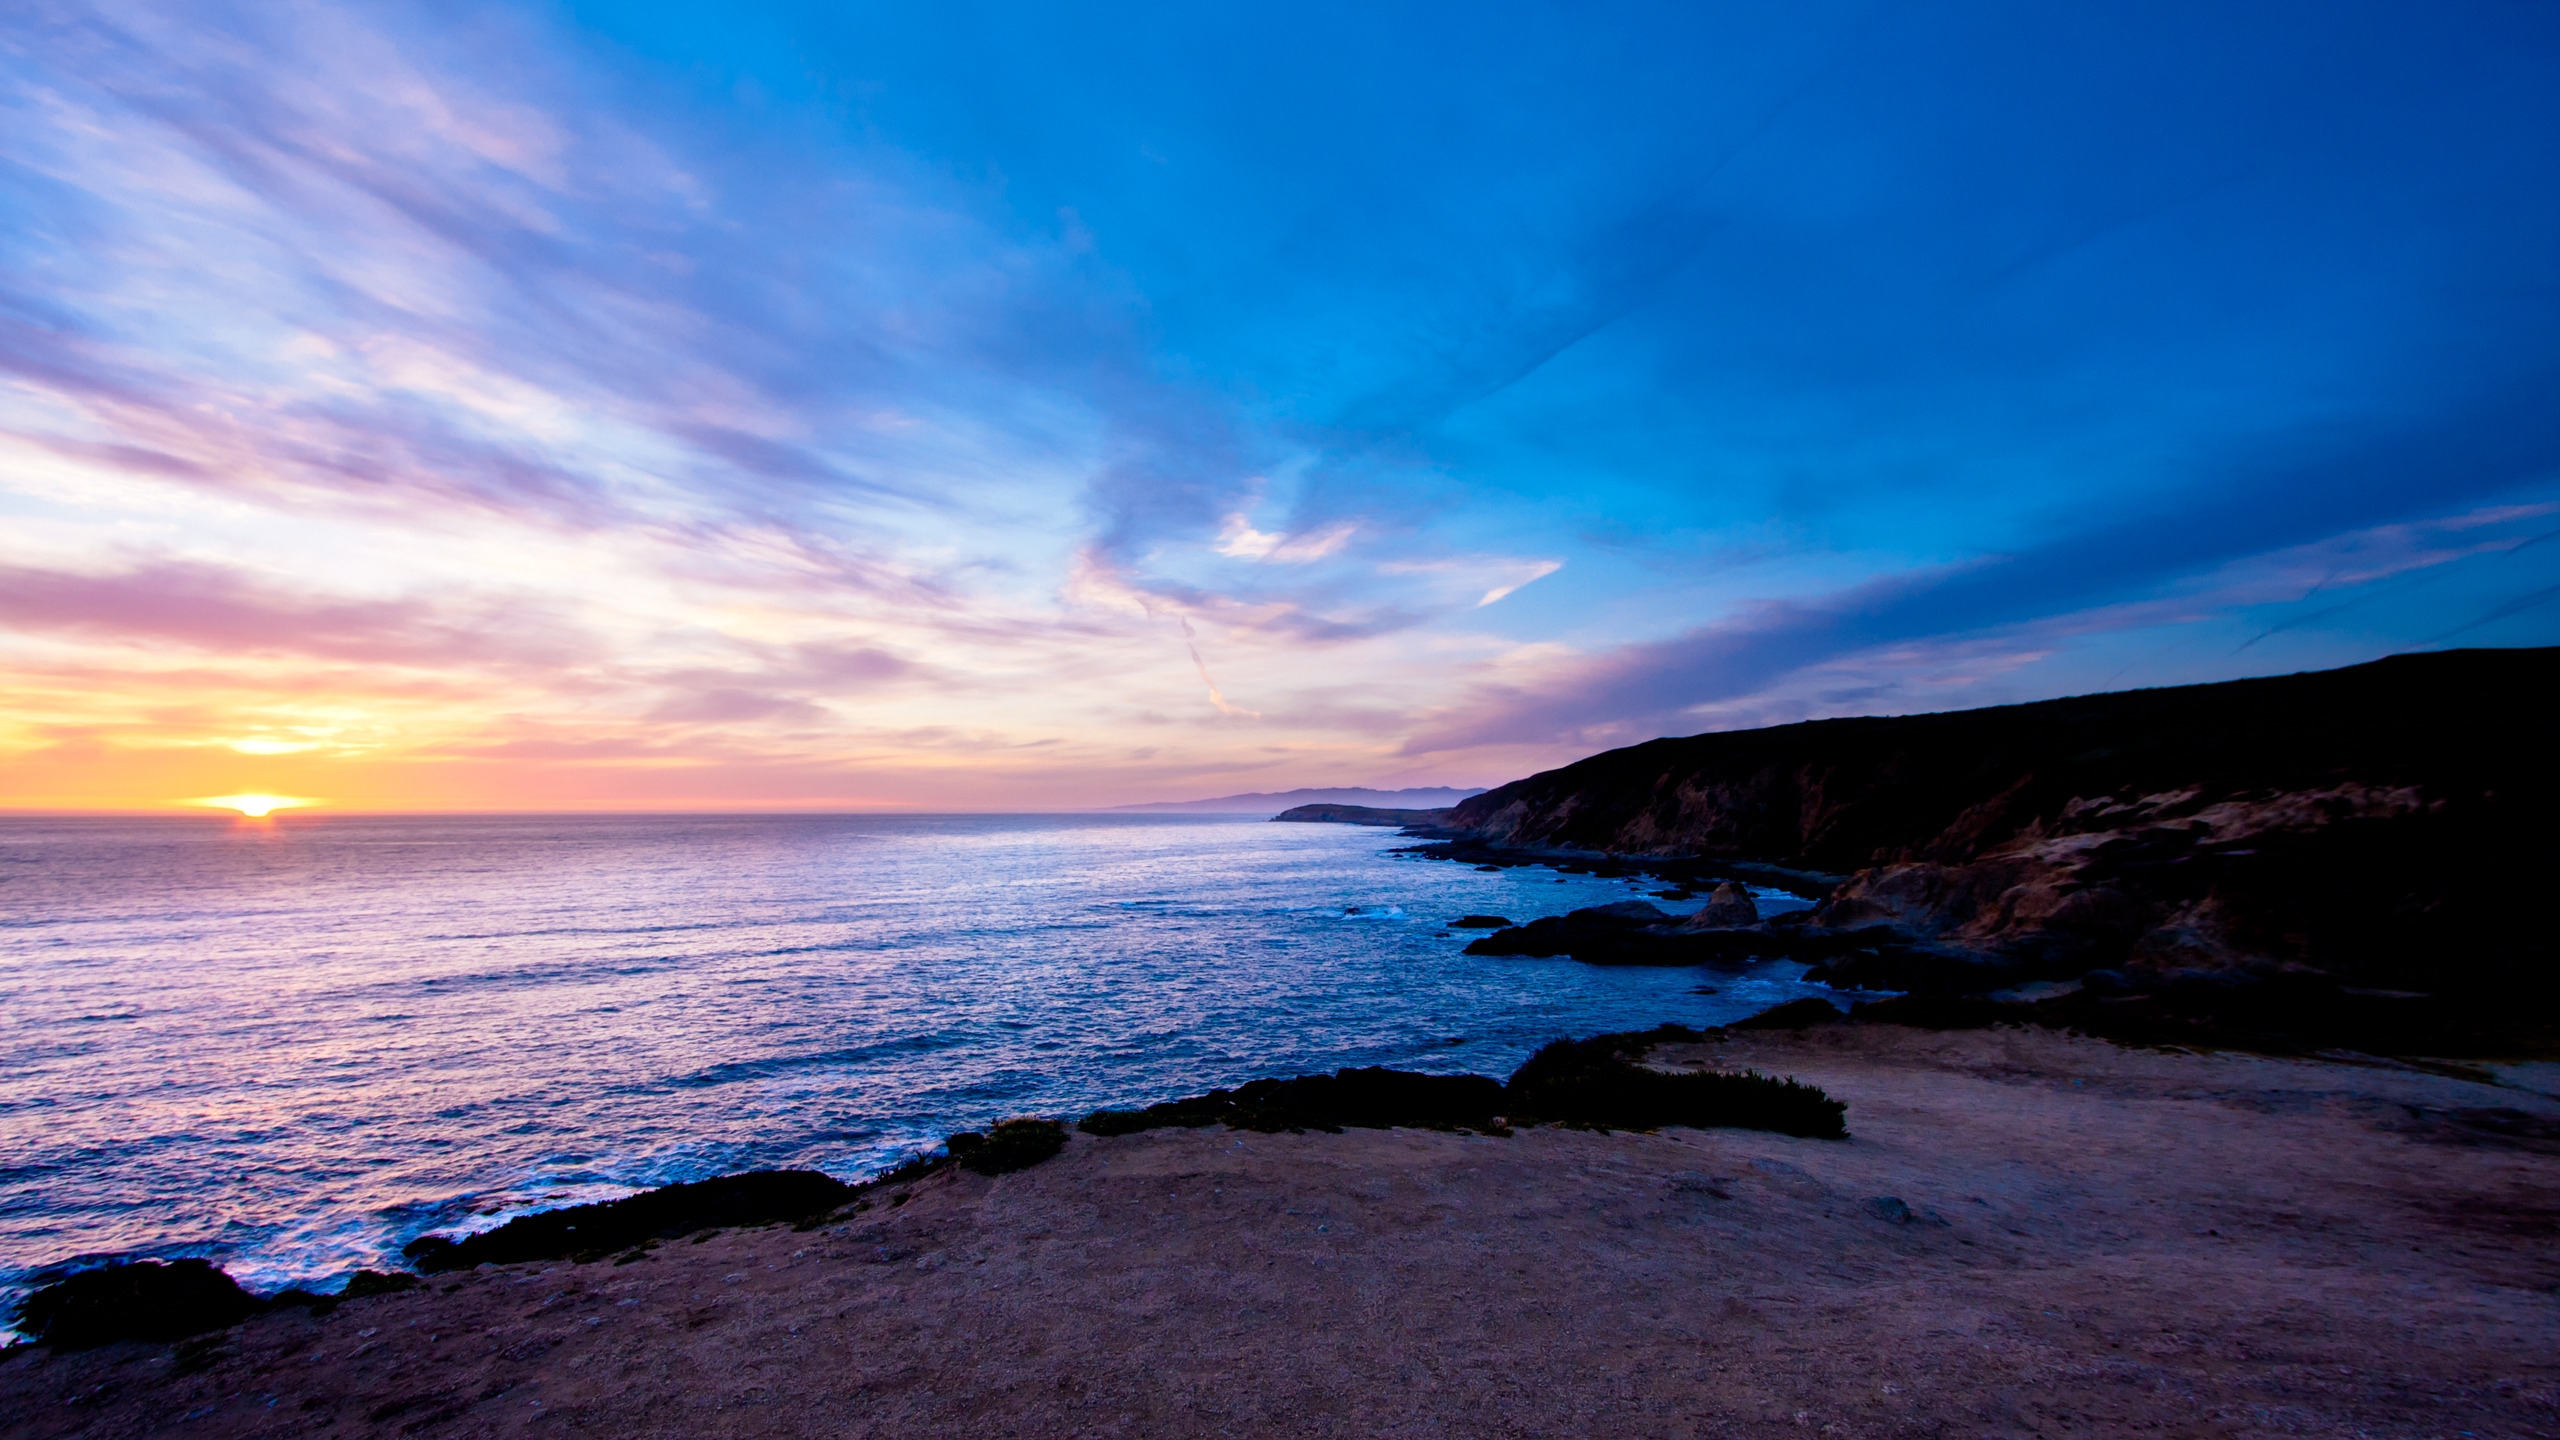 Bodega Head Sunset for 2560x1440 HDTV resolution